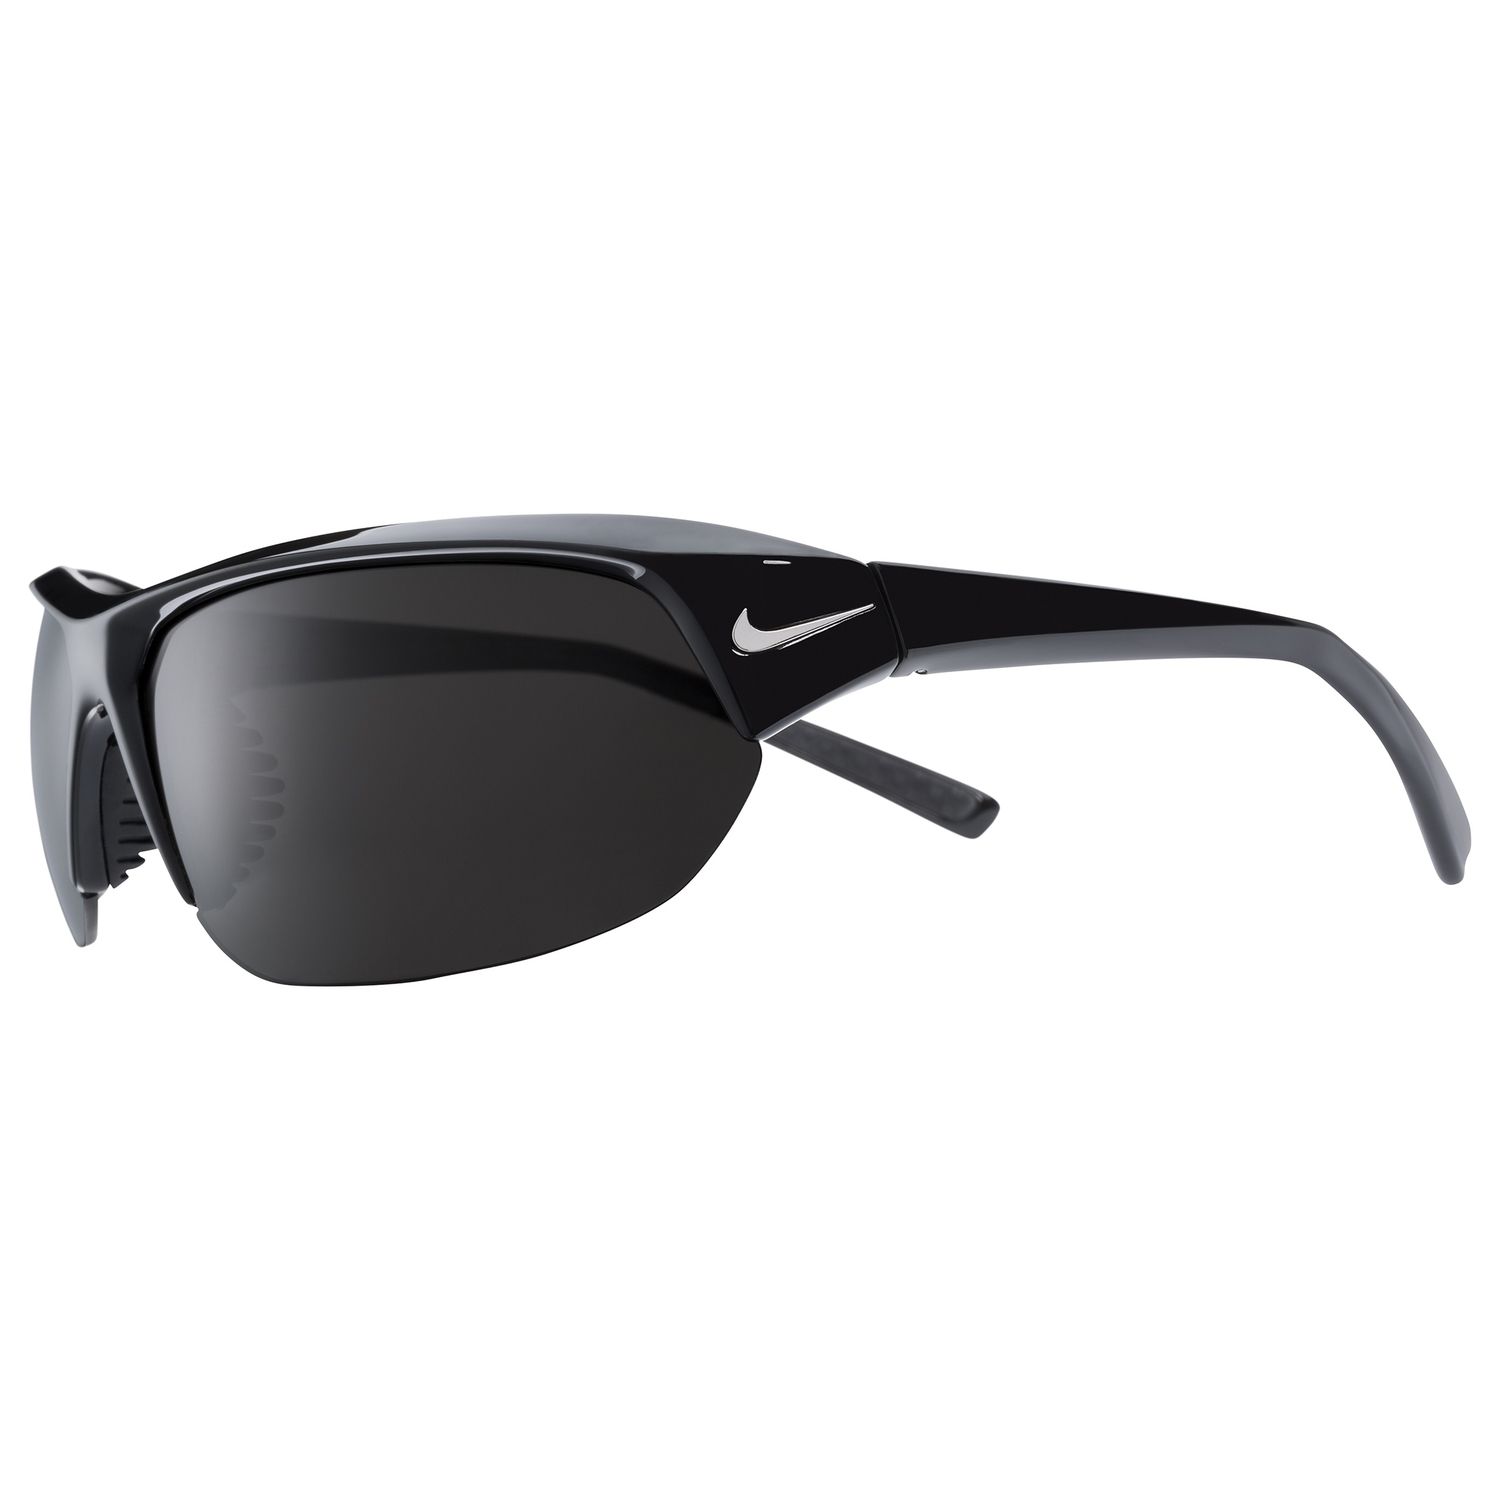 Men's Nike Skylon Ace Polarized Sunglasses